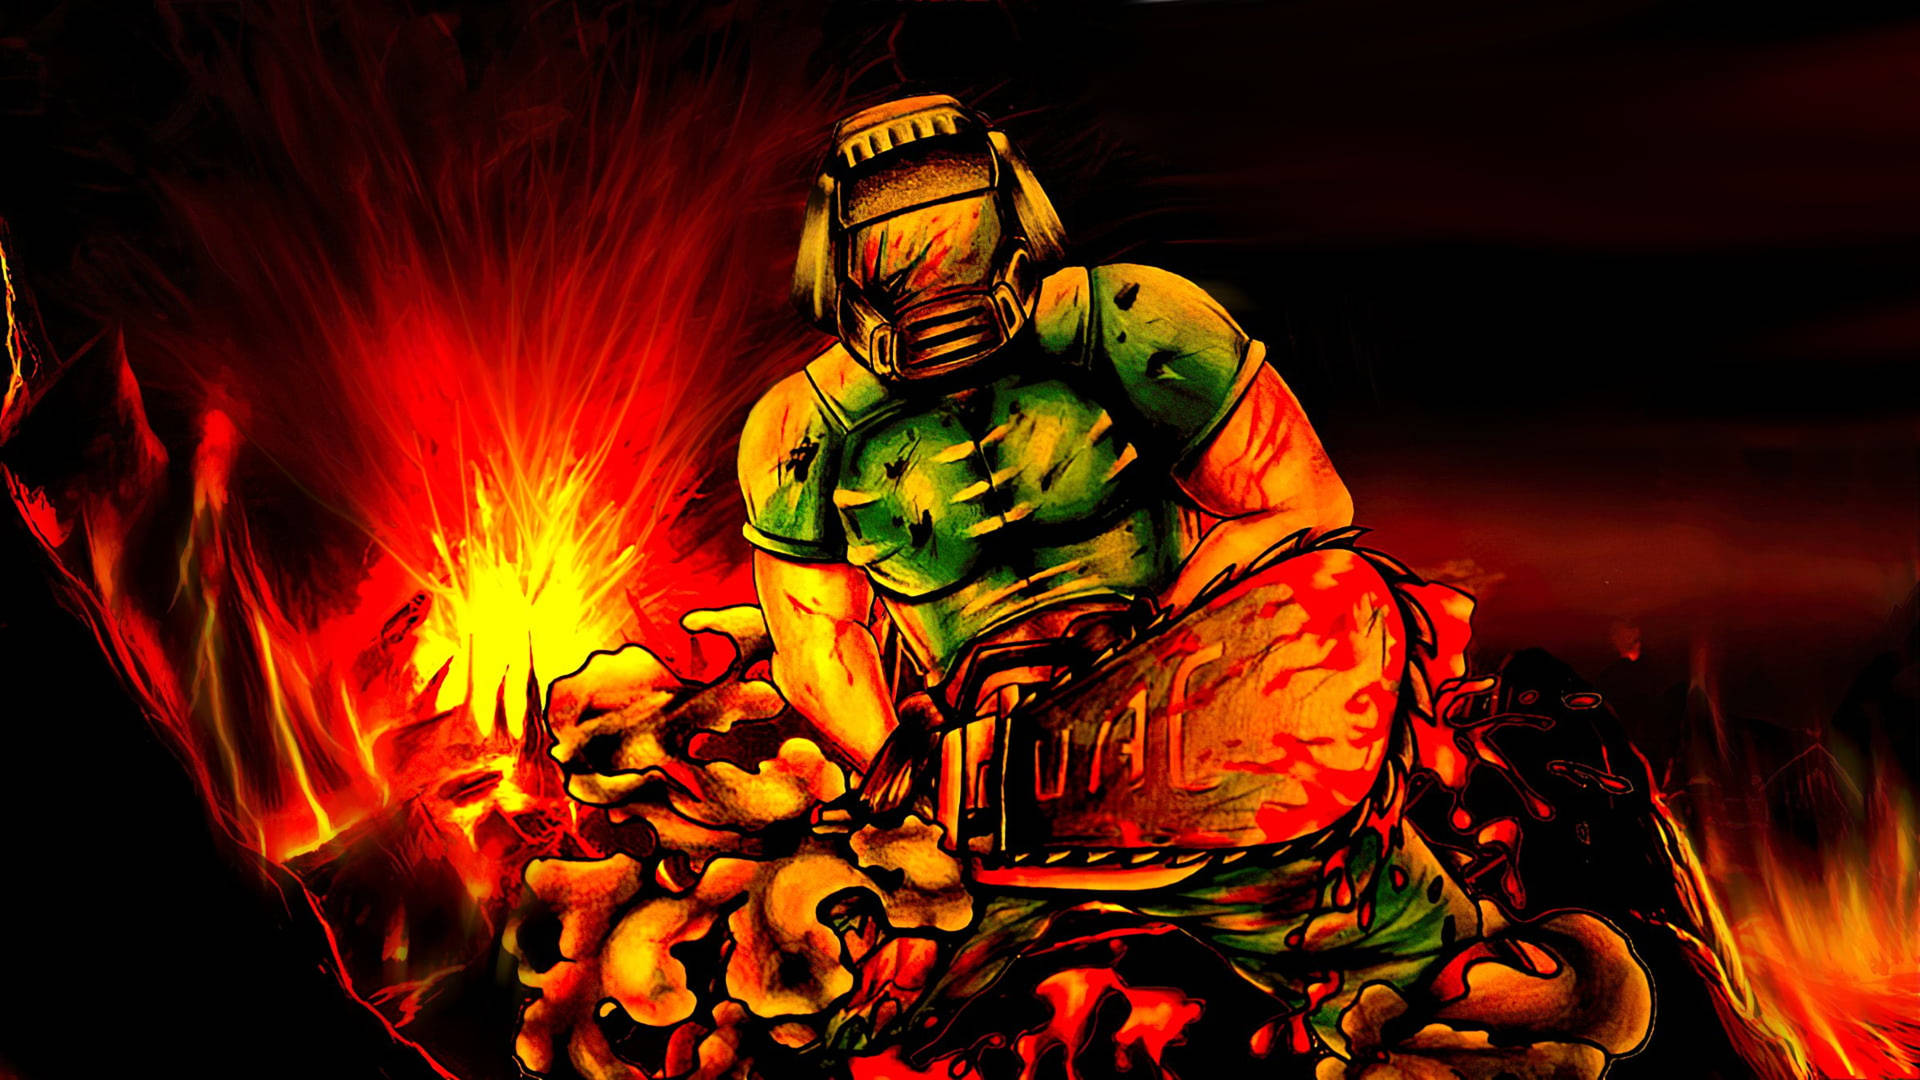 Doomguy Project Brutality Tapetet kommer med et hissigt tema, og intense farver og detaljer. Wallpaper